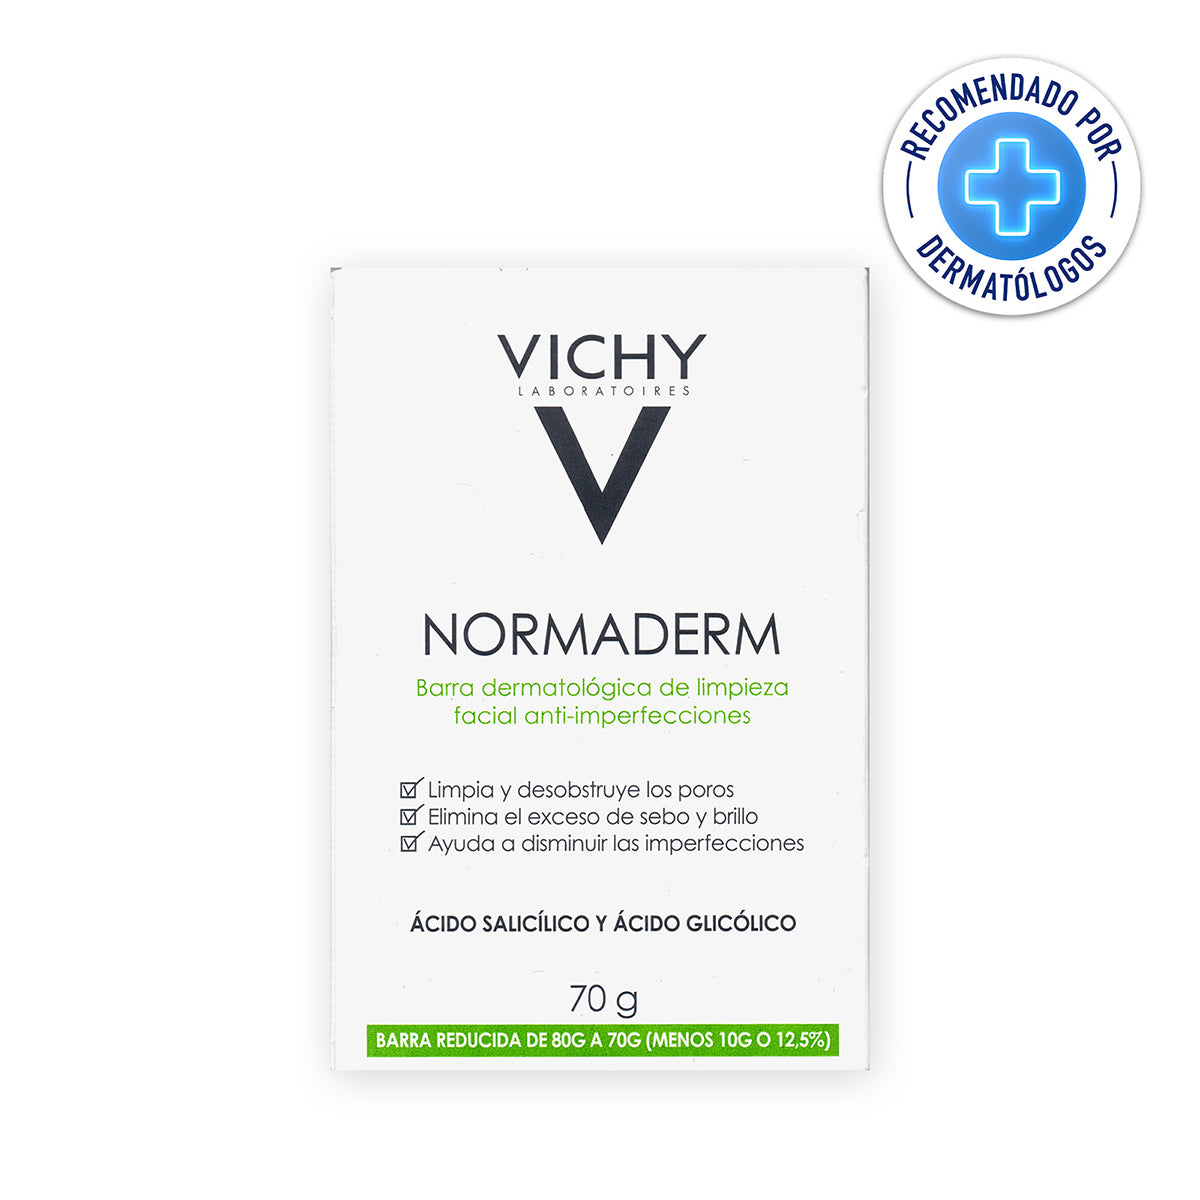 Vichy normaderm barra limpiadora facial 70g.